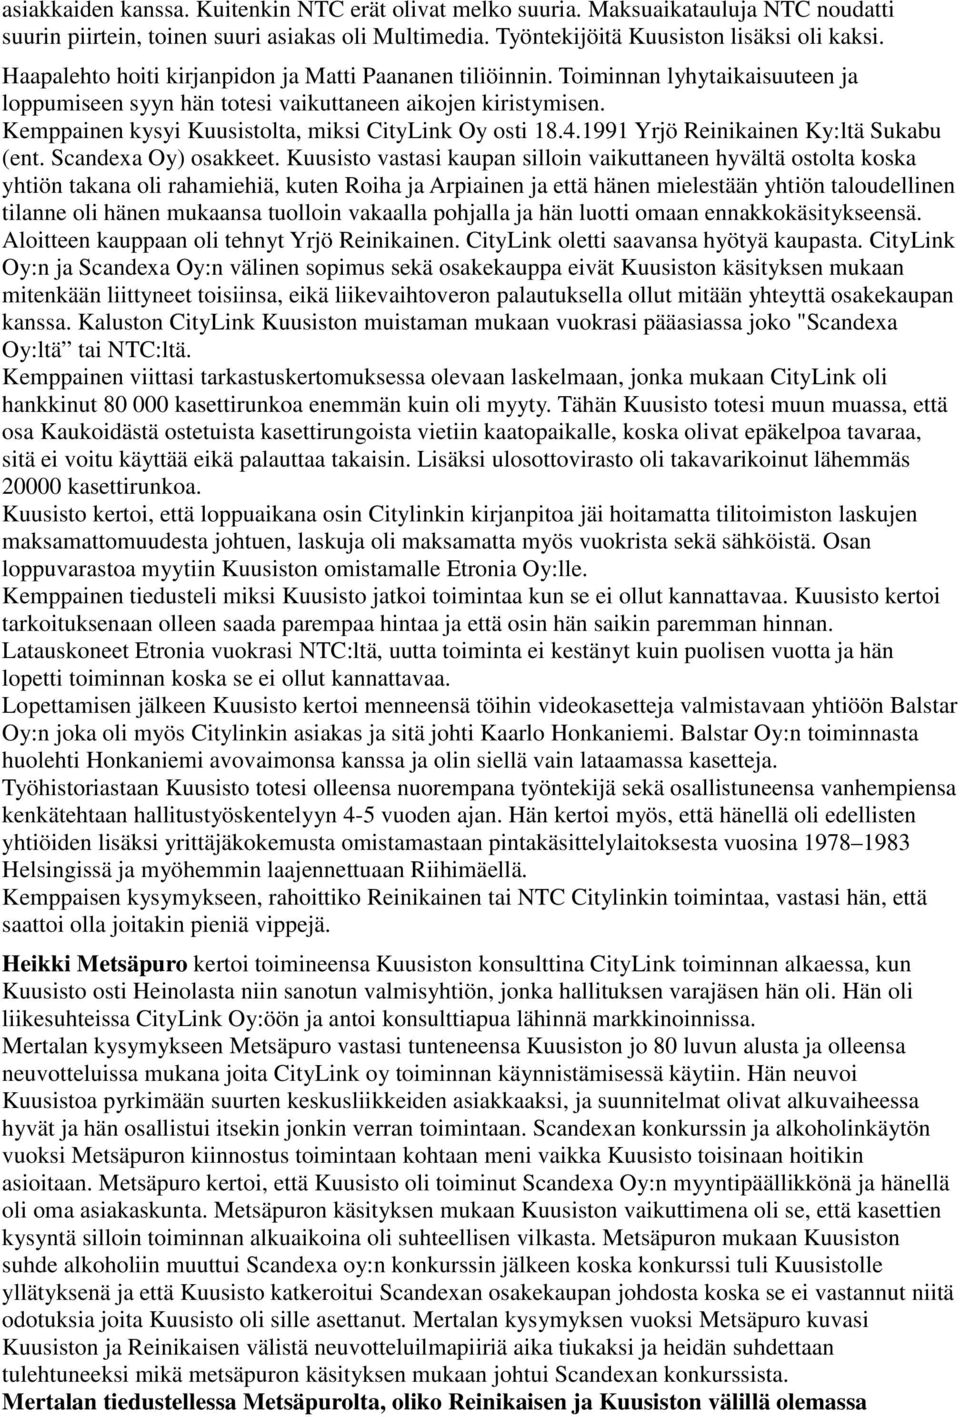 Kemppainen kysyi Kuusistolta, miksi CityLink Oy osti 18.4.1991 Yrjö Reinikainen Ky:ltä Sukabu (ent. Scandexa Oy) osakkeet.